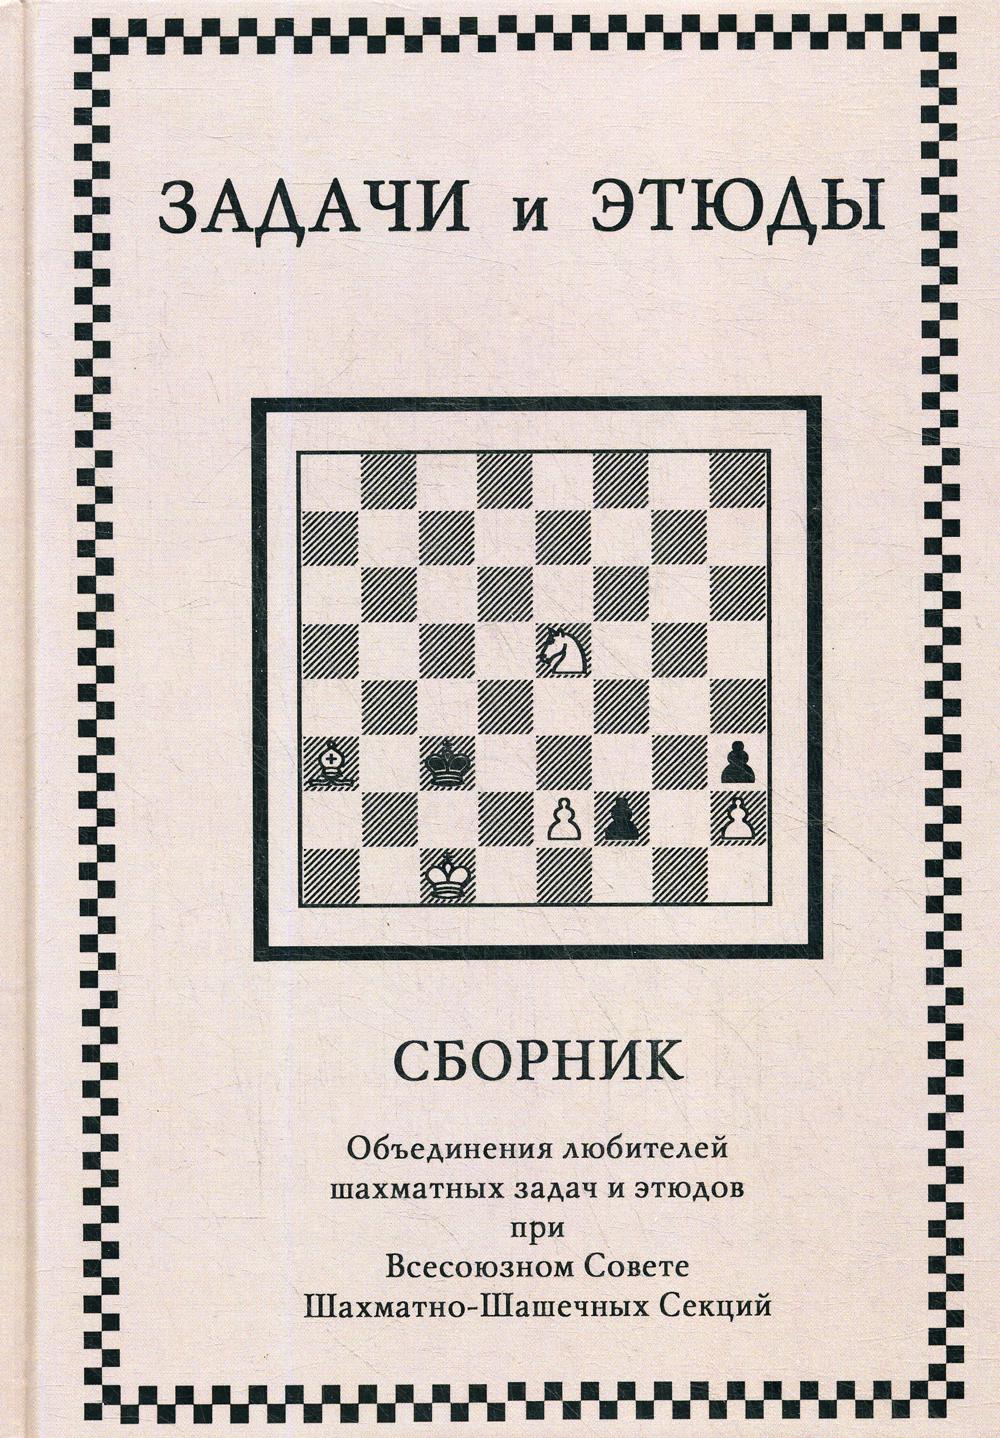 фото Книга задачи и этюды russian chess house